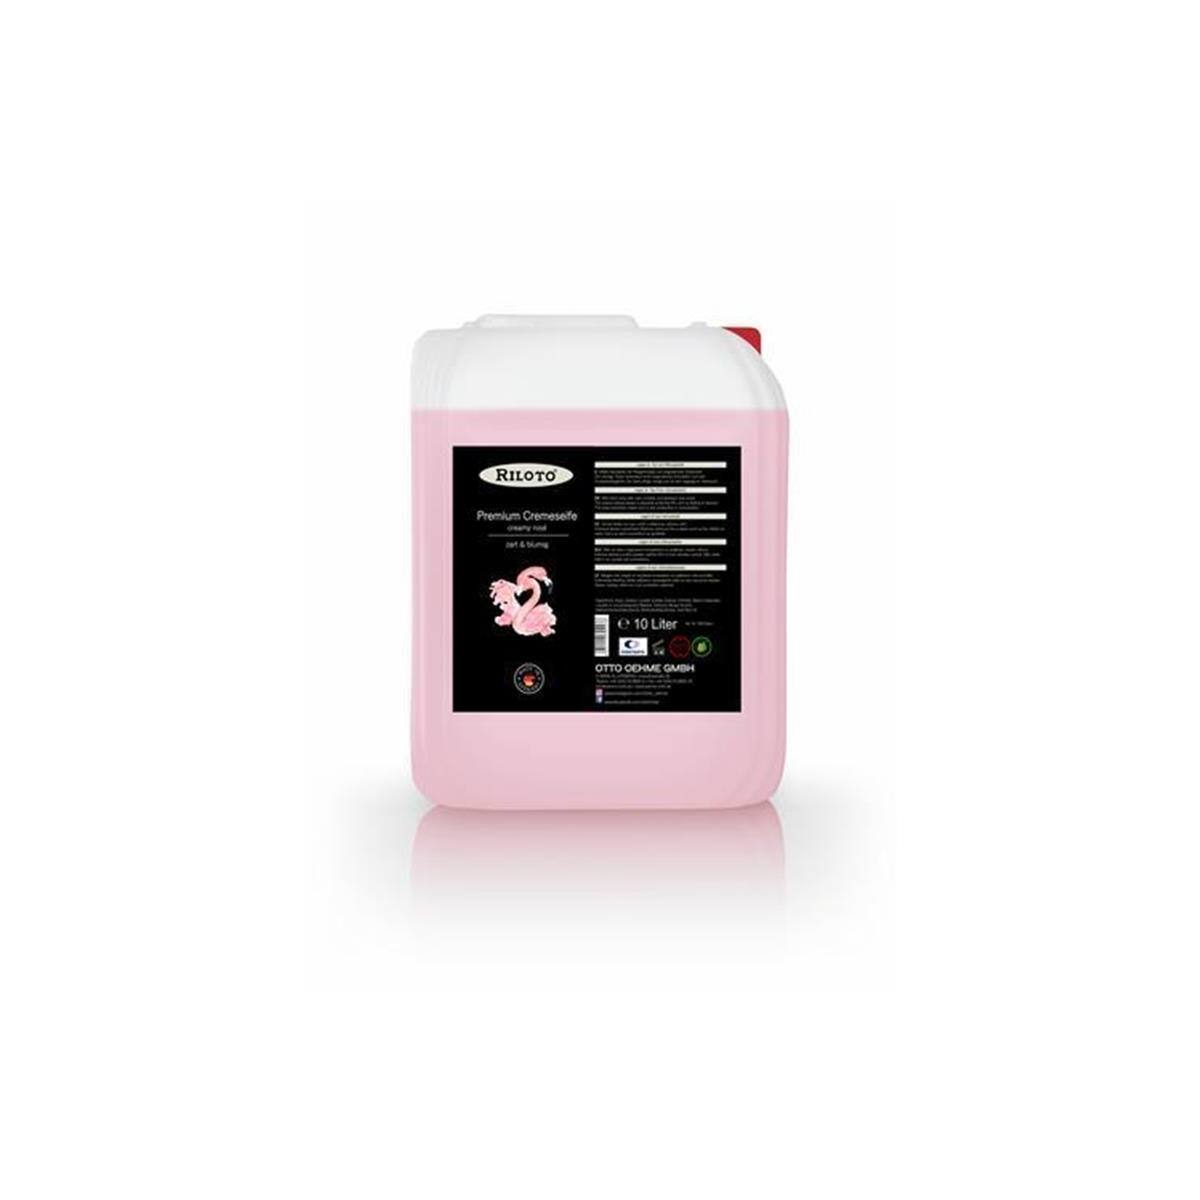 Riloto Premium Cremeseife Creamy Rosé